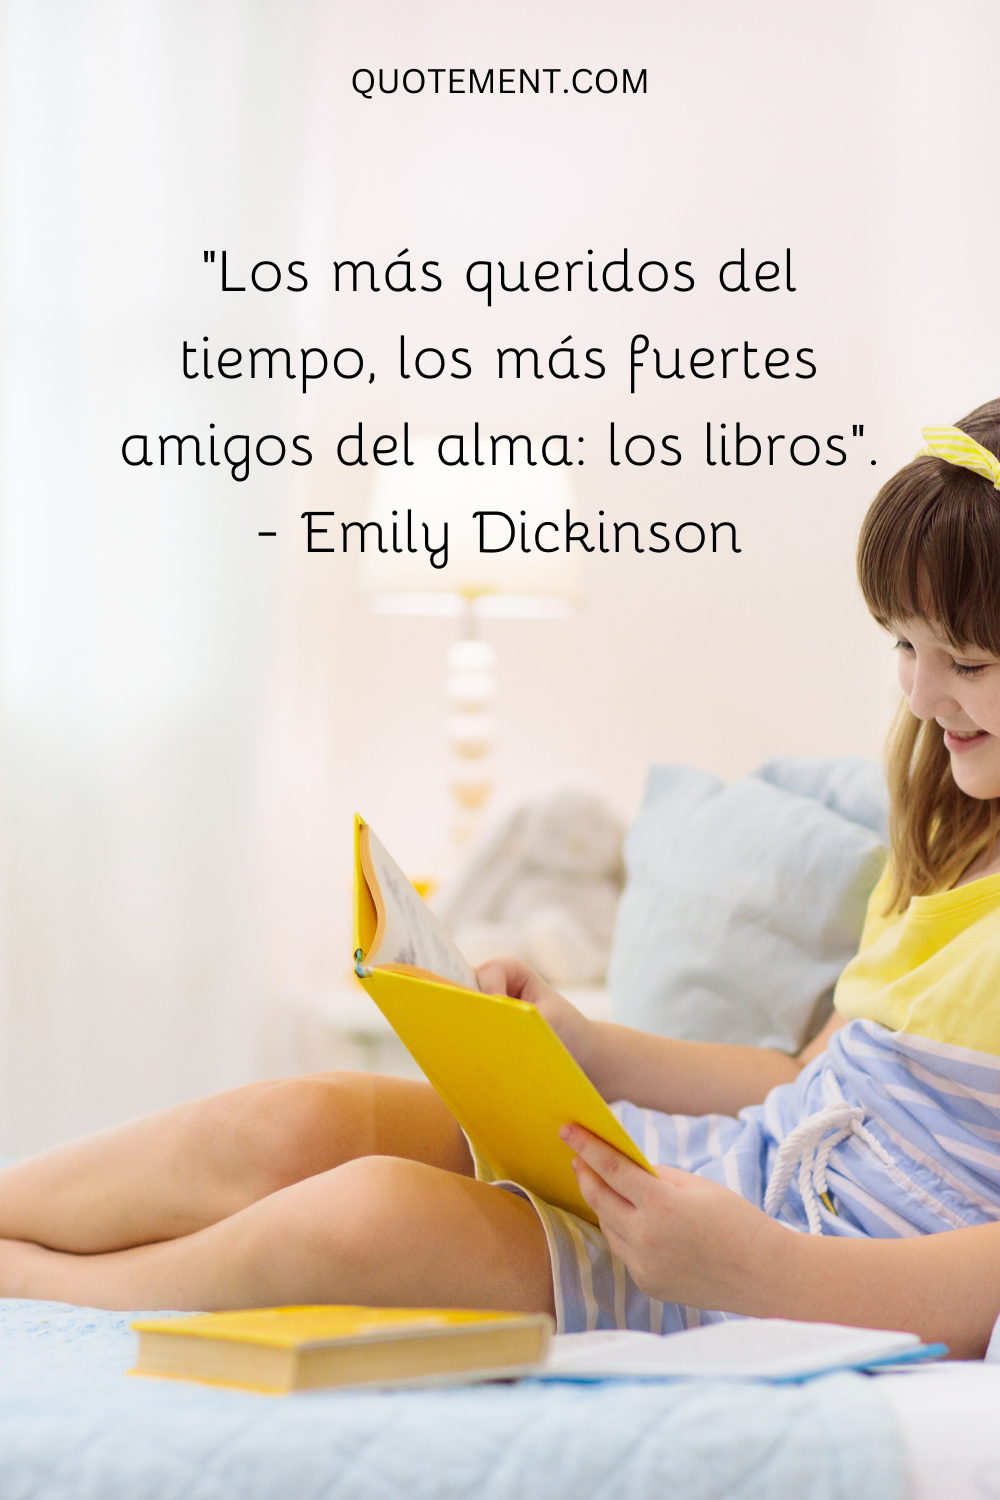 "Los más queridos del tiempo, los más fuertes amigos de los libros del alma". - Emily Dickinson